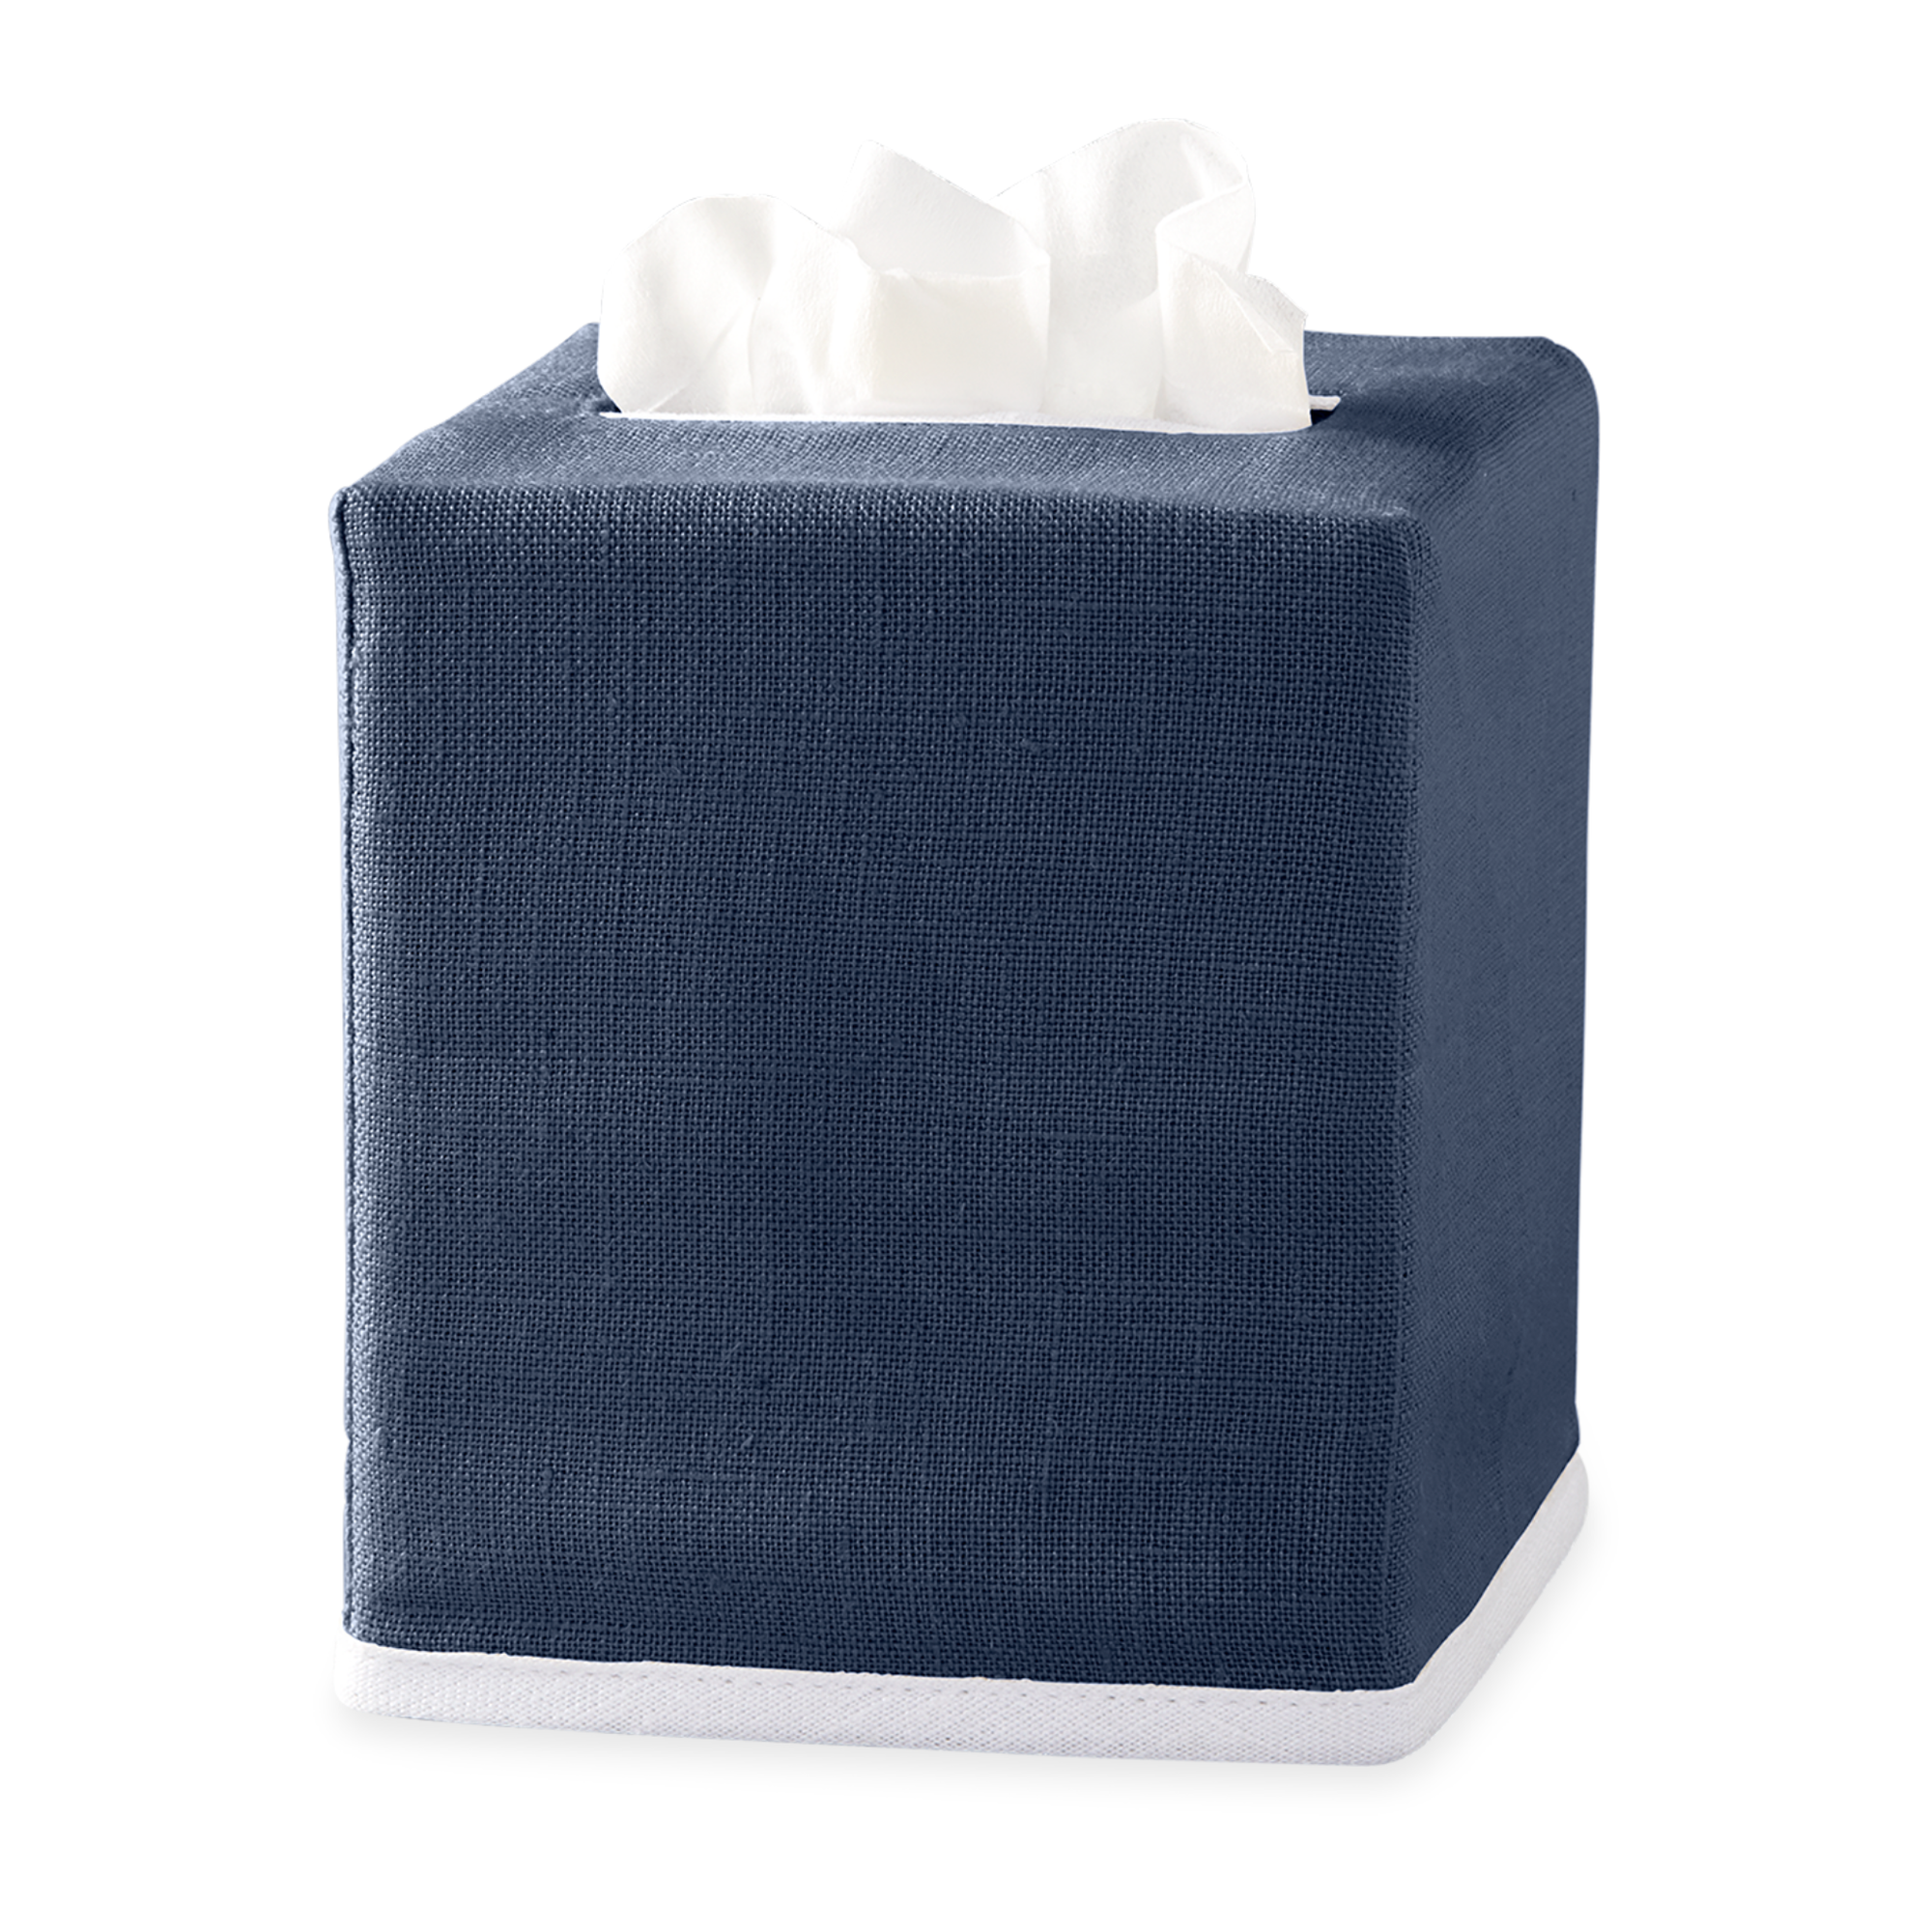 Navy  Matouk Chelsea Linen Tissue Box Cover Against White Background